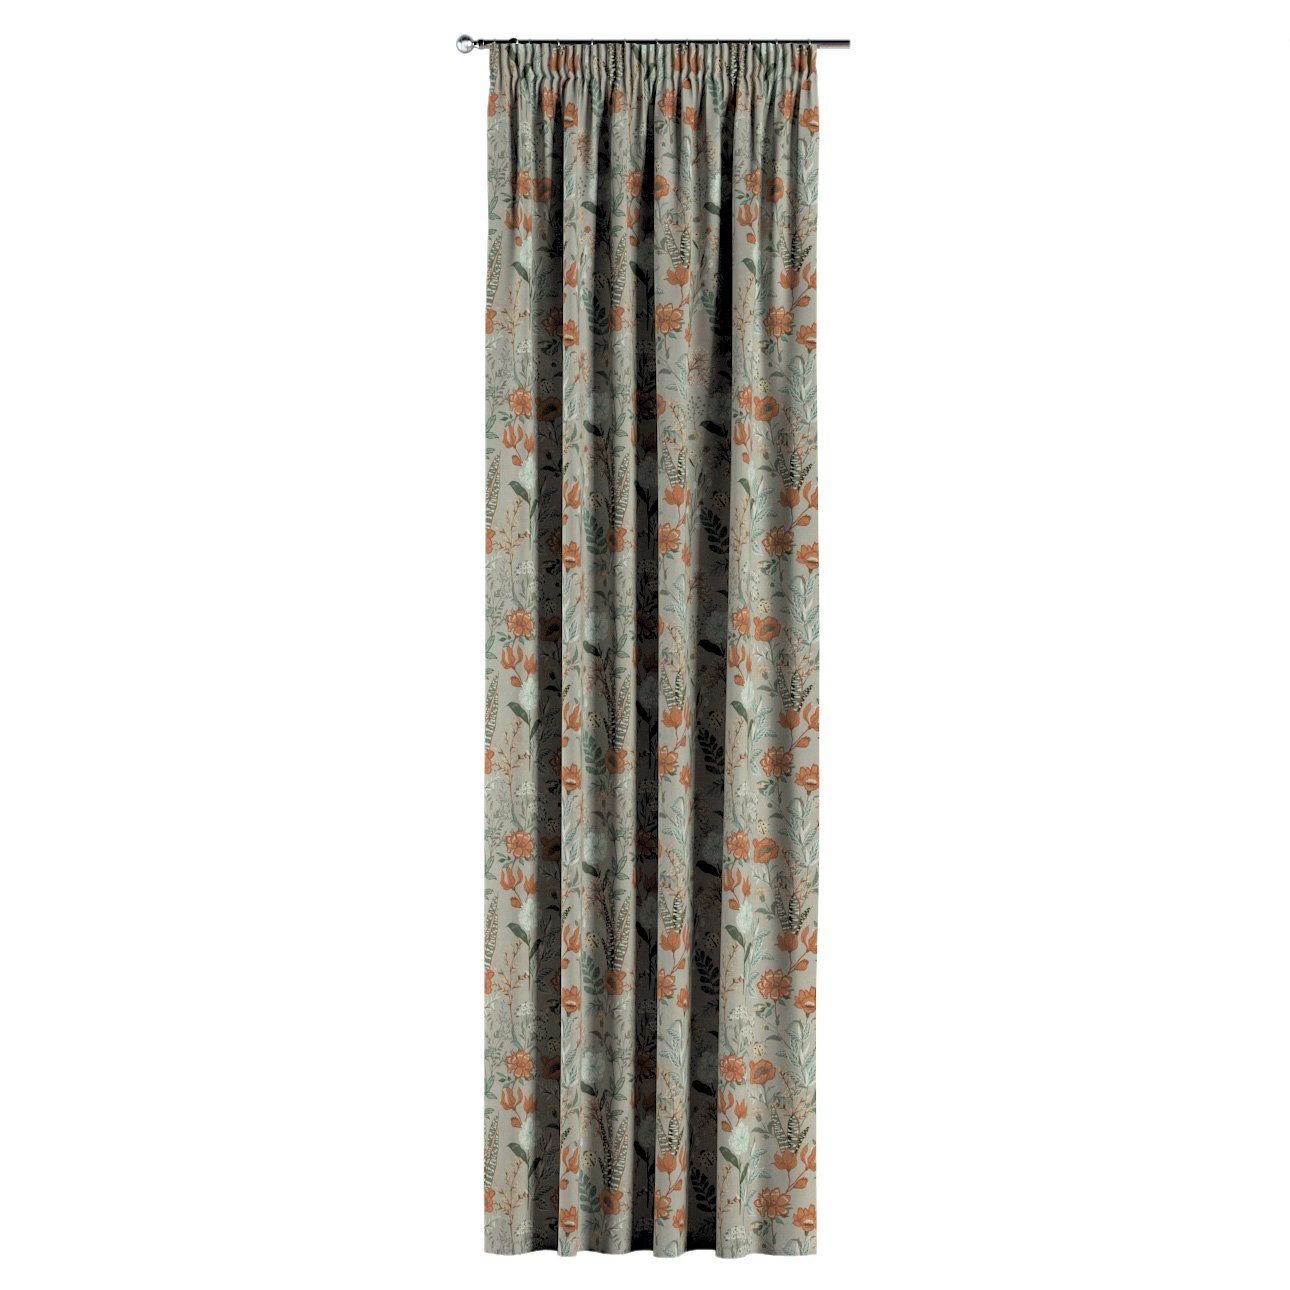 Vorhang 130x100 mit Flowers, Kräuselband grau-orange-grün Vorhang cm, Dekoria